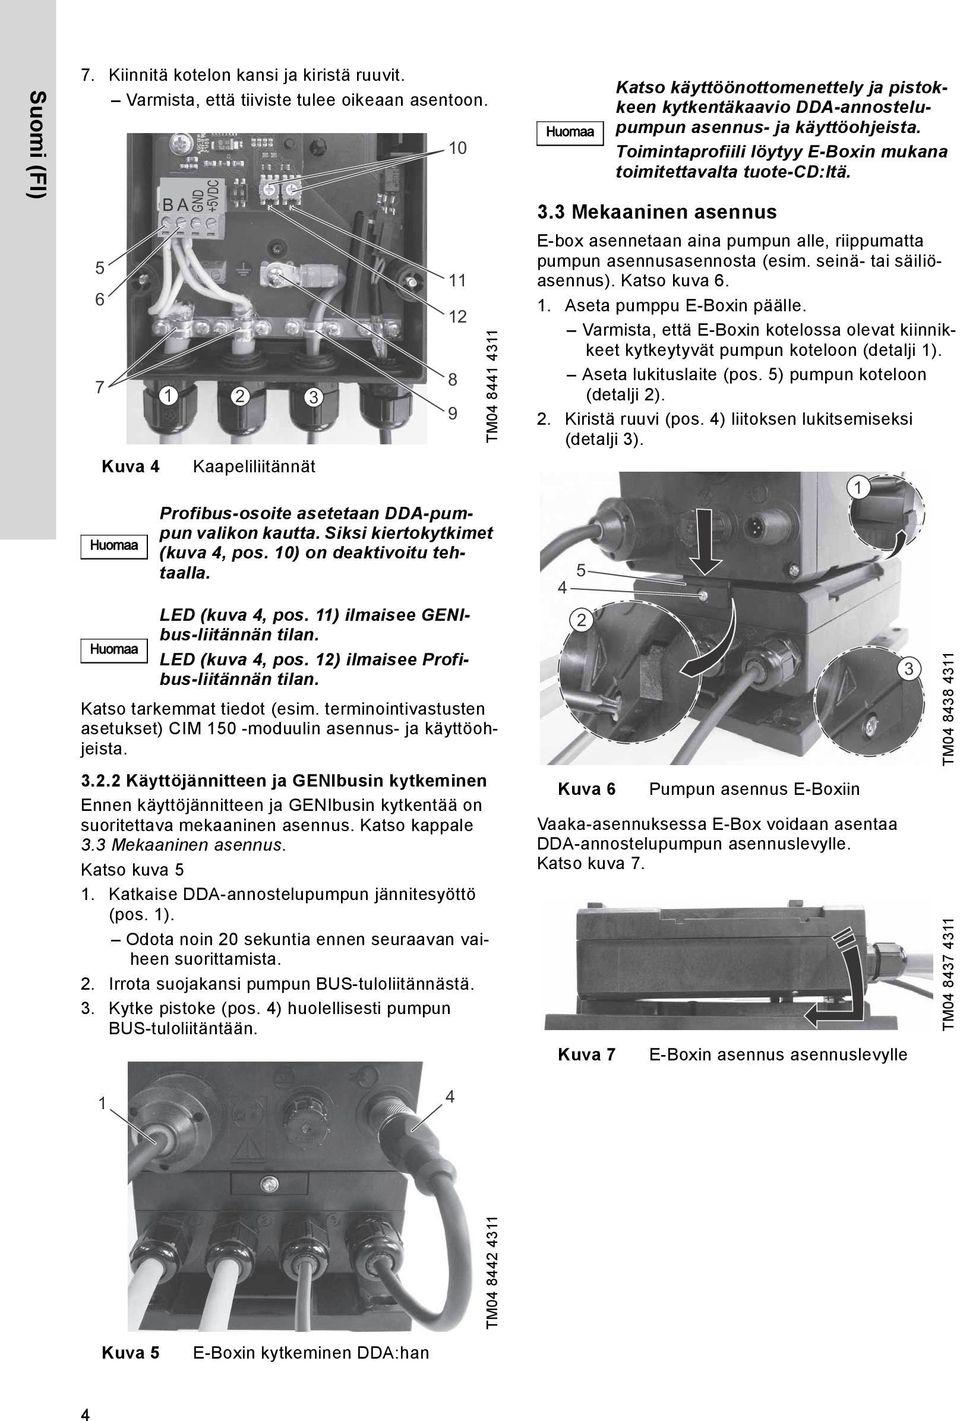 2 Käyttöjännitteen ja GENIbusin kytkeminen Ennen käyttöjännitteen ja GENIbusin kytkentää on suoritettava mekaaninen asennus. Katso kappale 3.3 Mekaaninen asennus. Katso kuva 5 1.